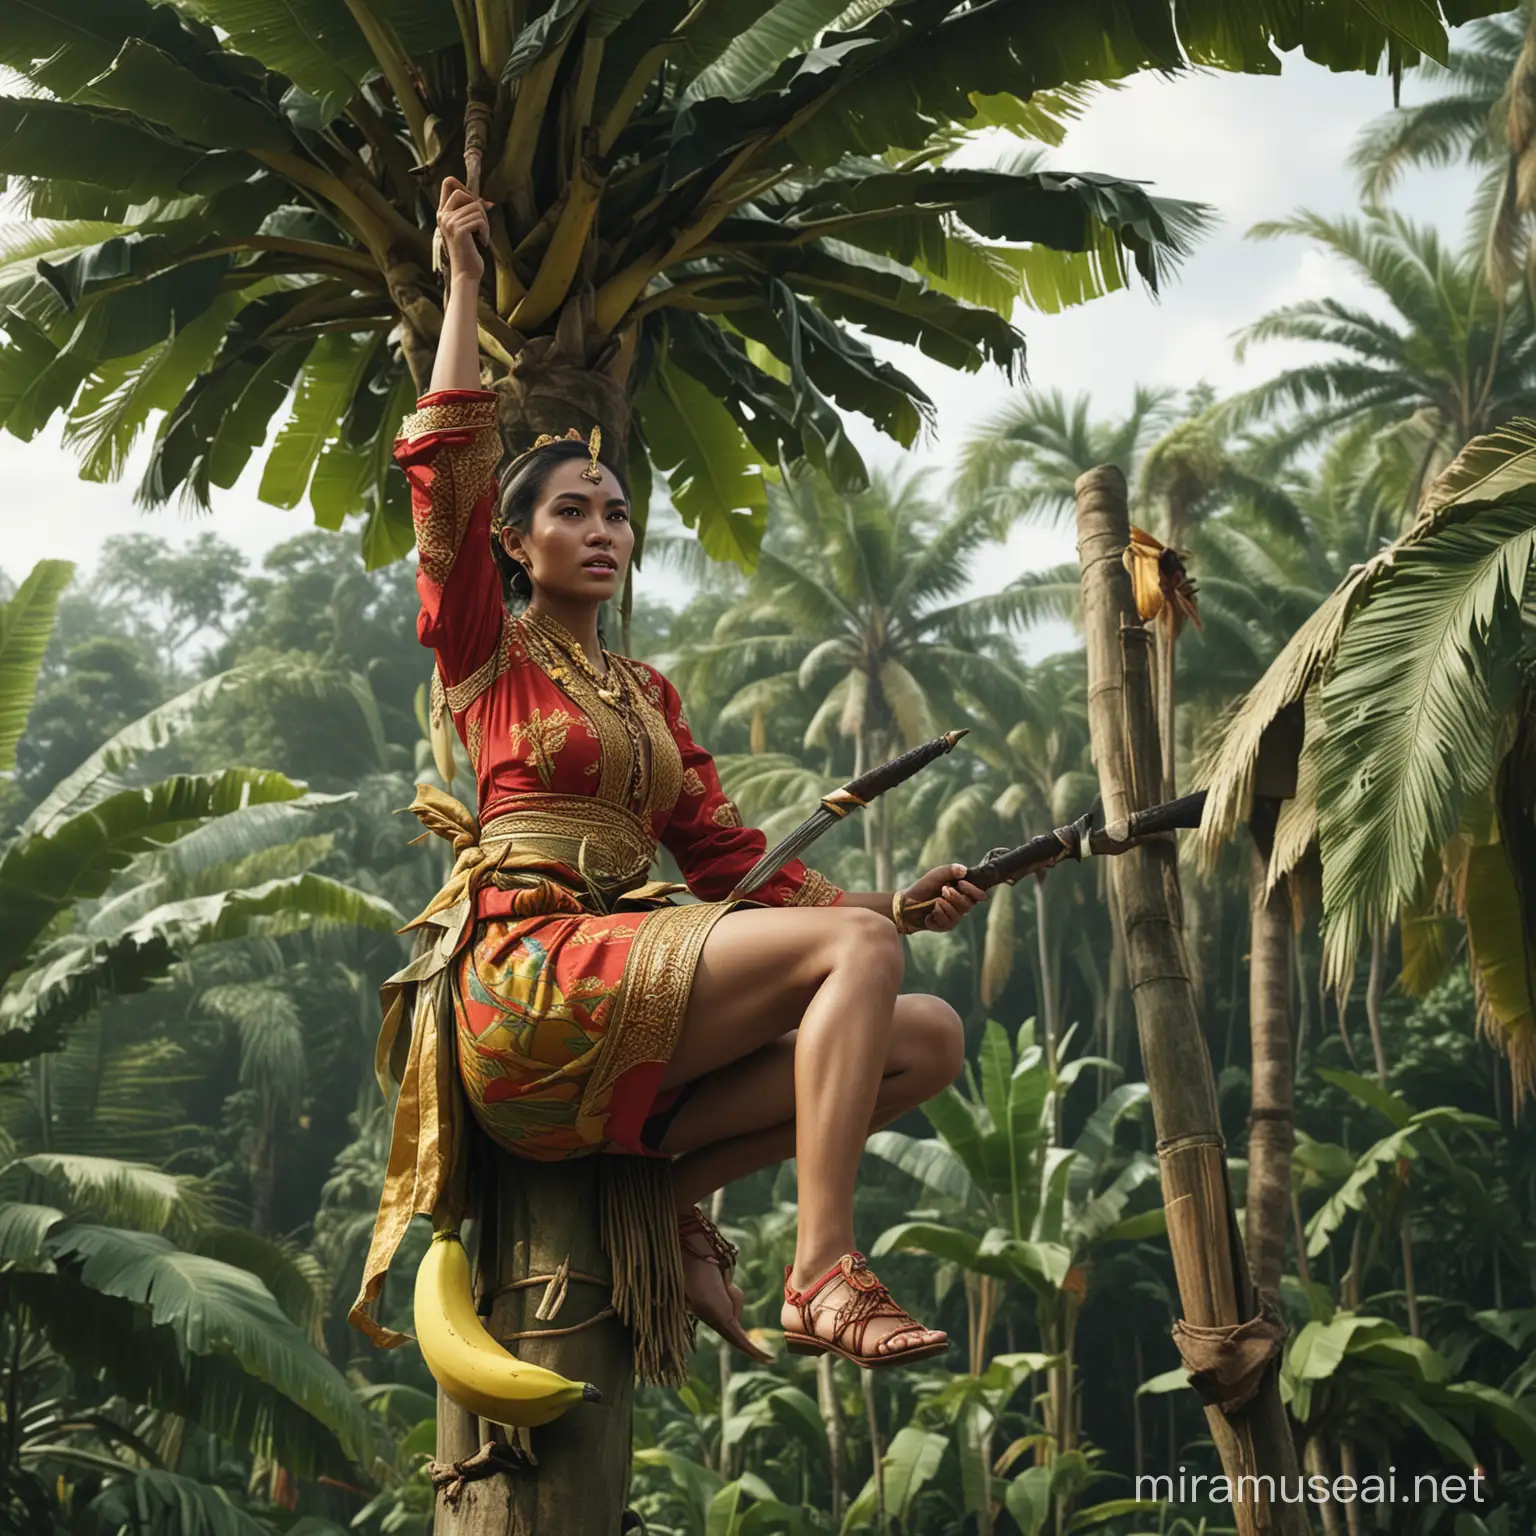 Seorang wanita menggunakan baju adat indonesia sedang memanjat pohon pisang menggunakan senjata, hd,realistis